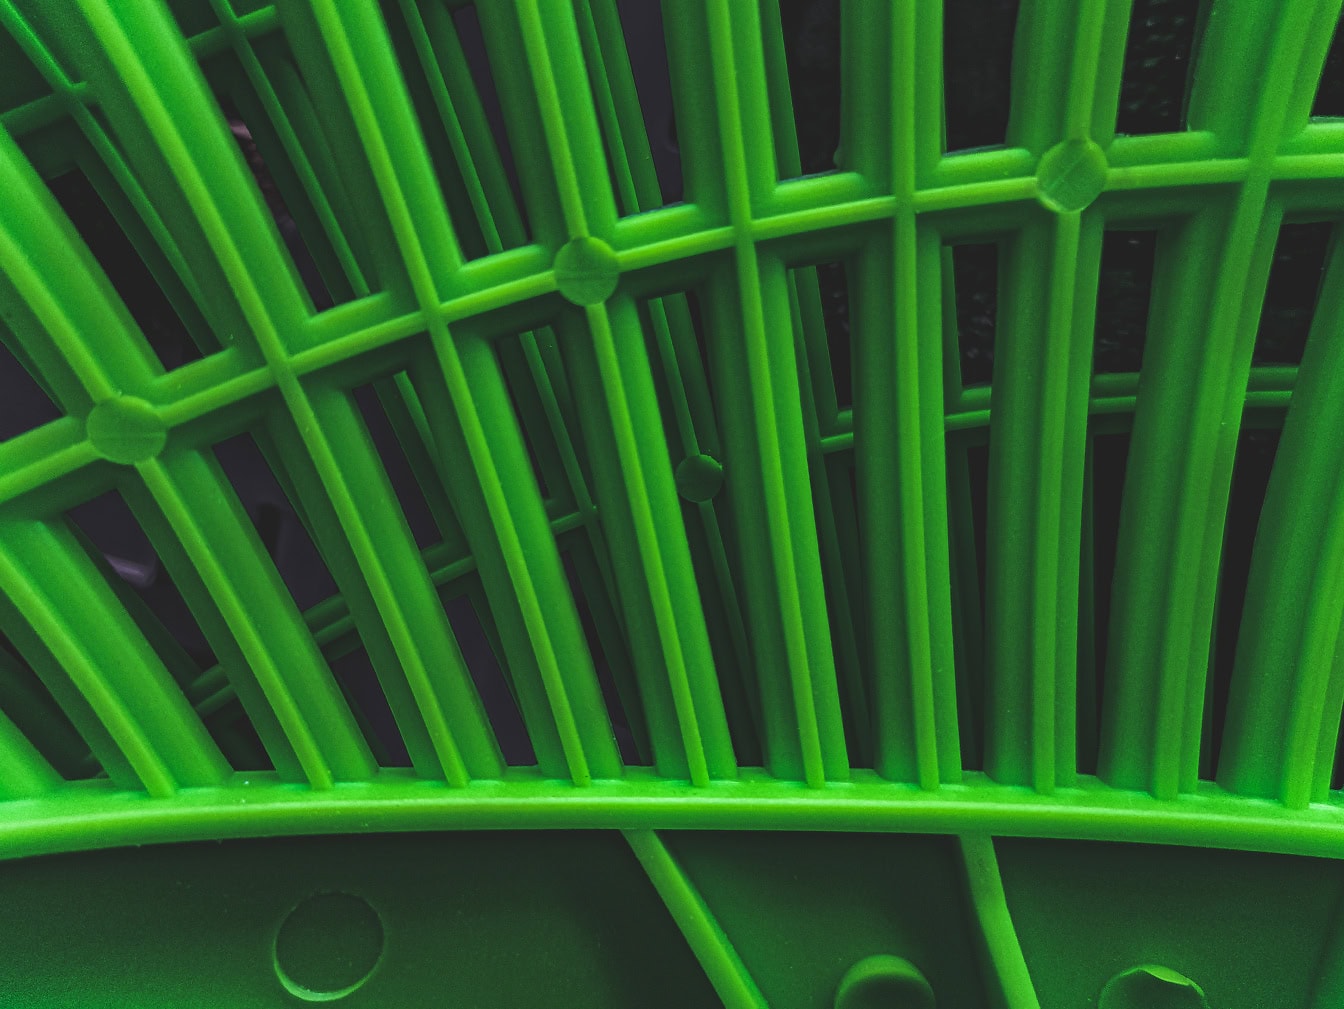 Nærbillede af tekstur af en grøn plastgenstand